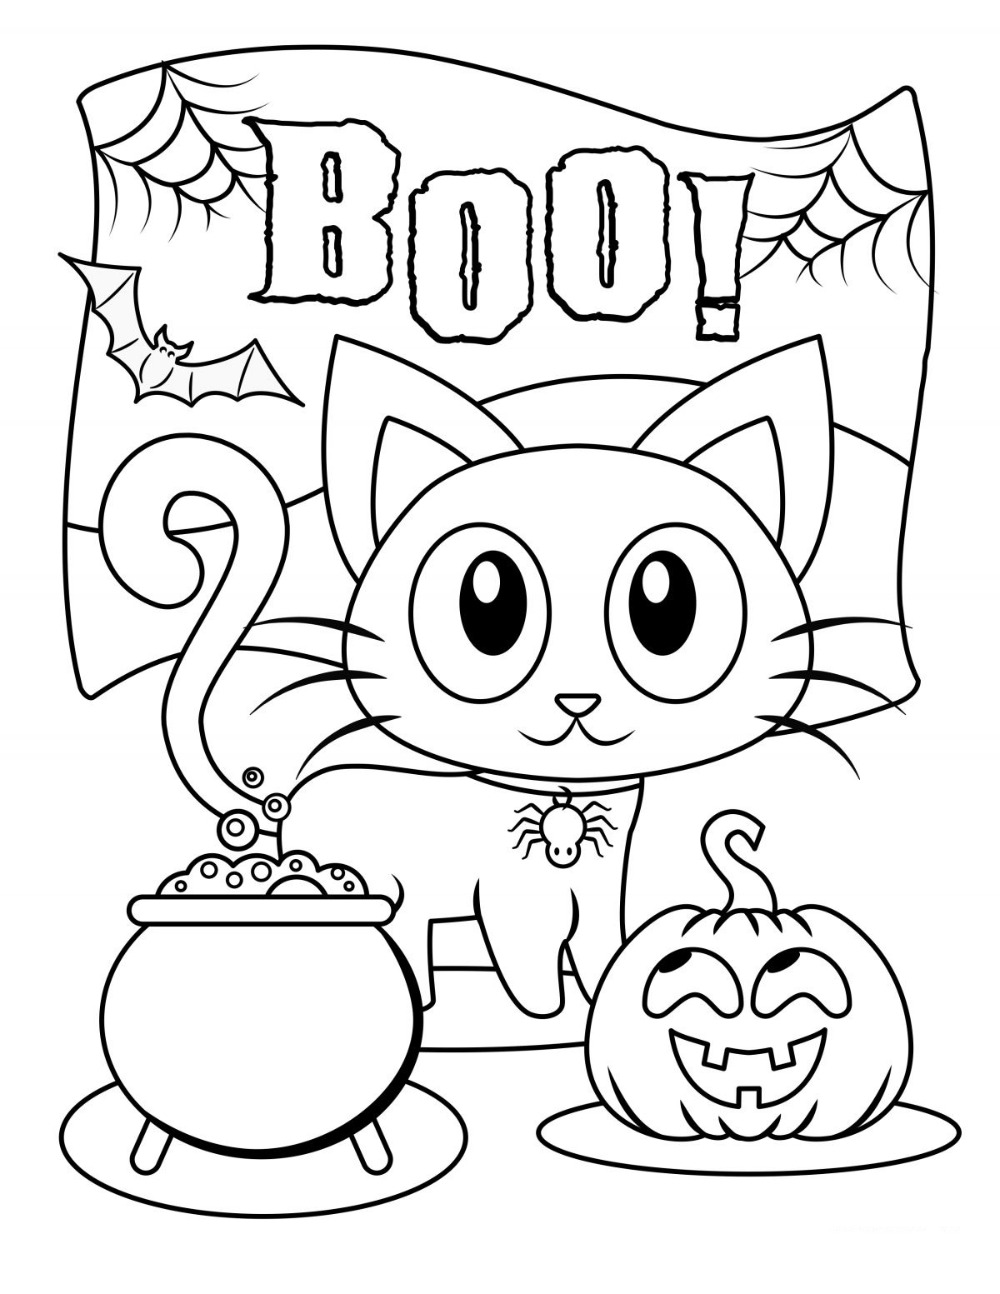 Tô Màu Với Ví Dụ Màu Halloween Ma Và Phù Thủy Hình minh họa Sẵn có  Tải  xuống Hình ảnh Ngay bây giờ  Trang sách tô màu Halloween  Ngày